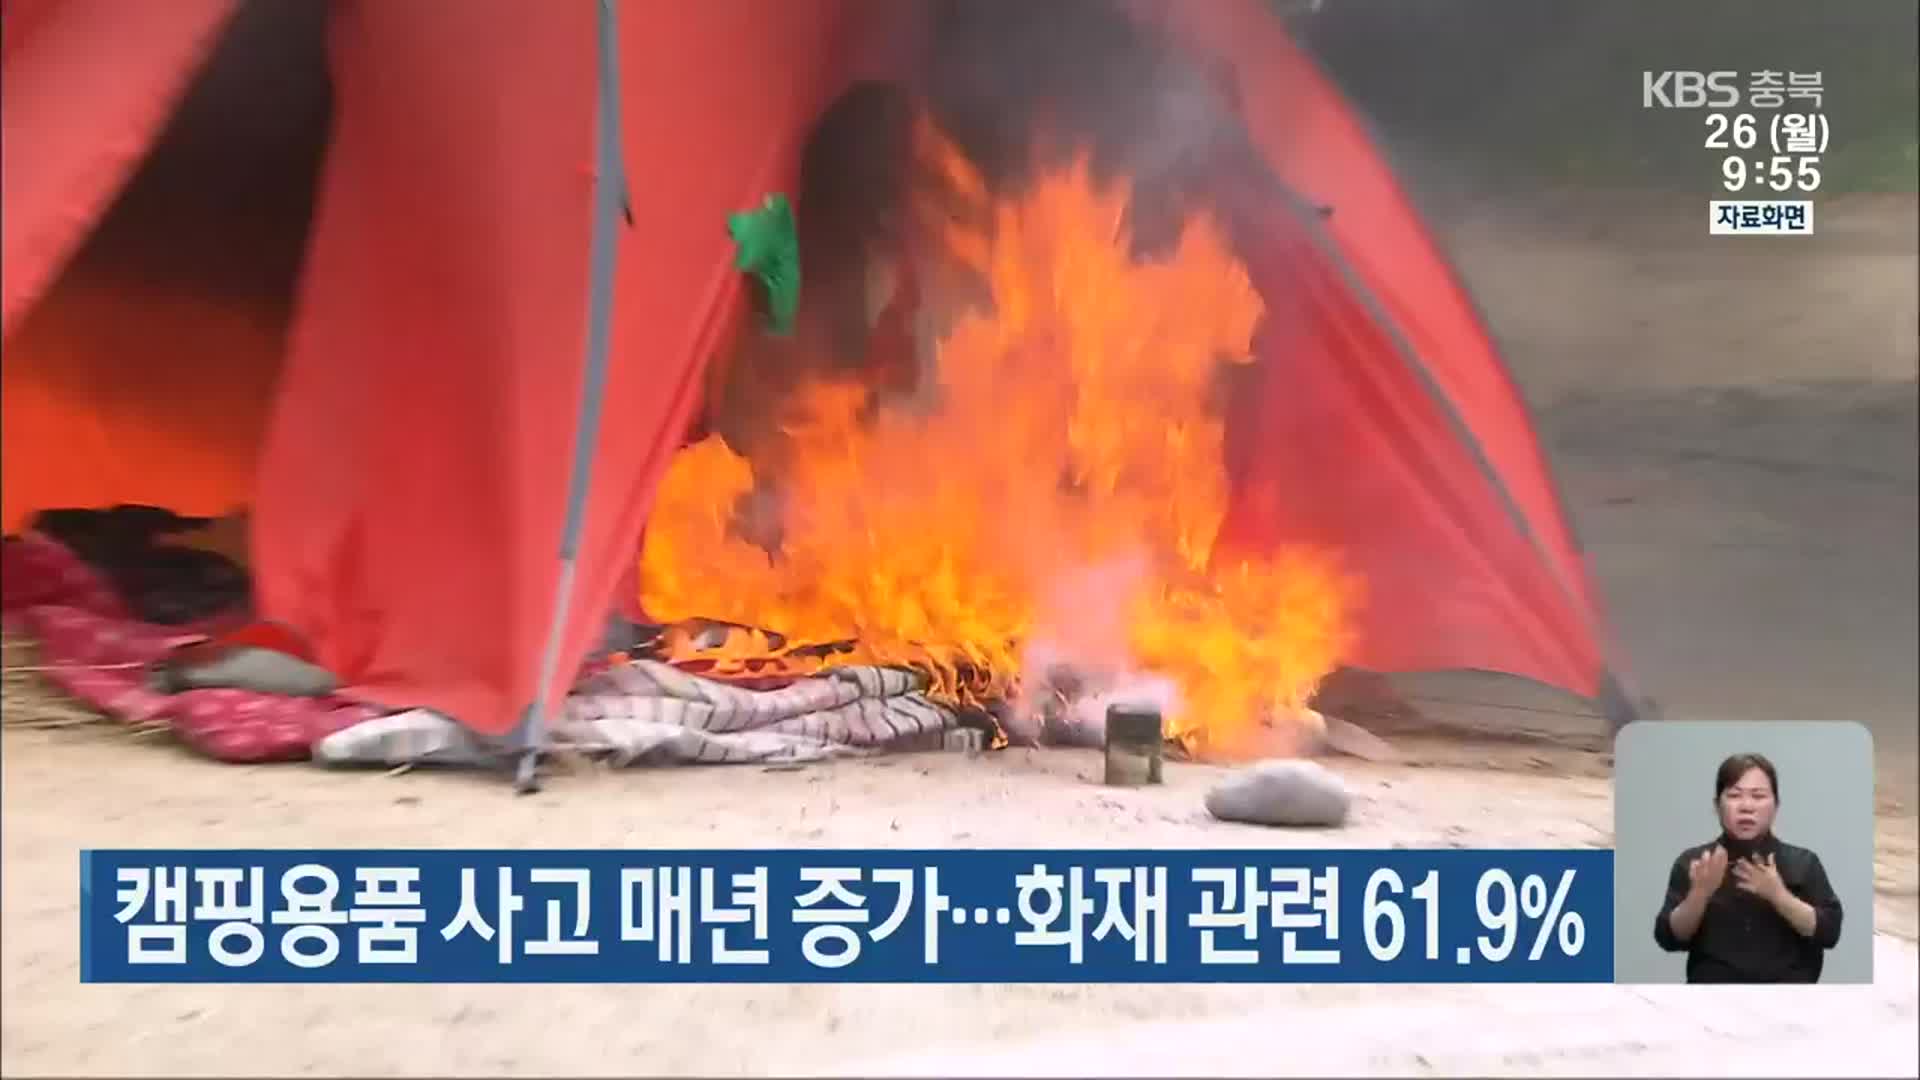 캠핑용품 사고 매년 증가…화재 관련 61.9%